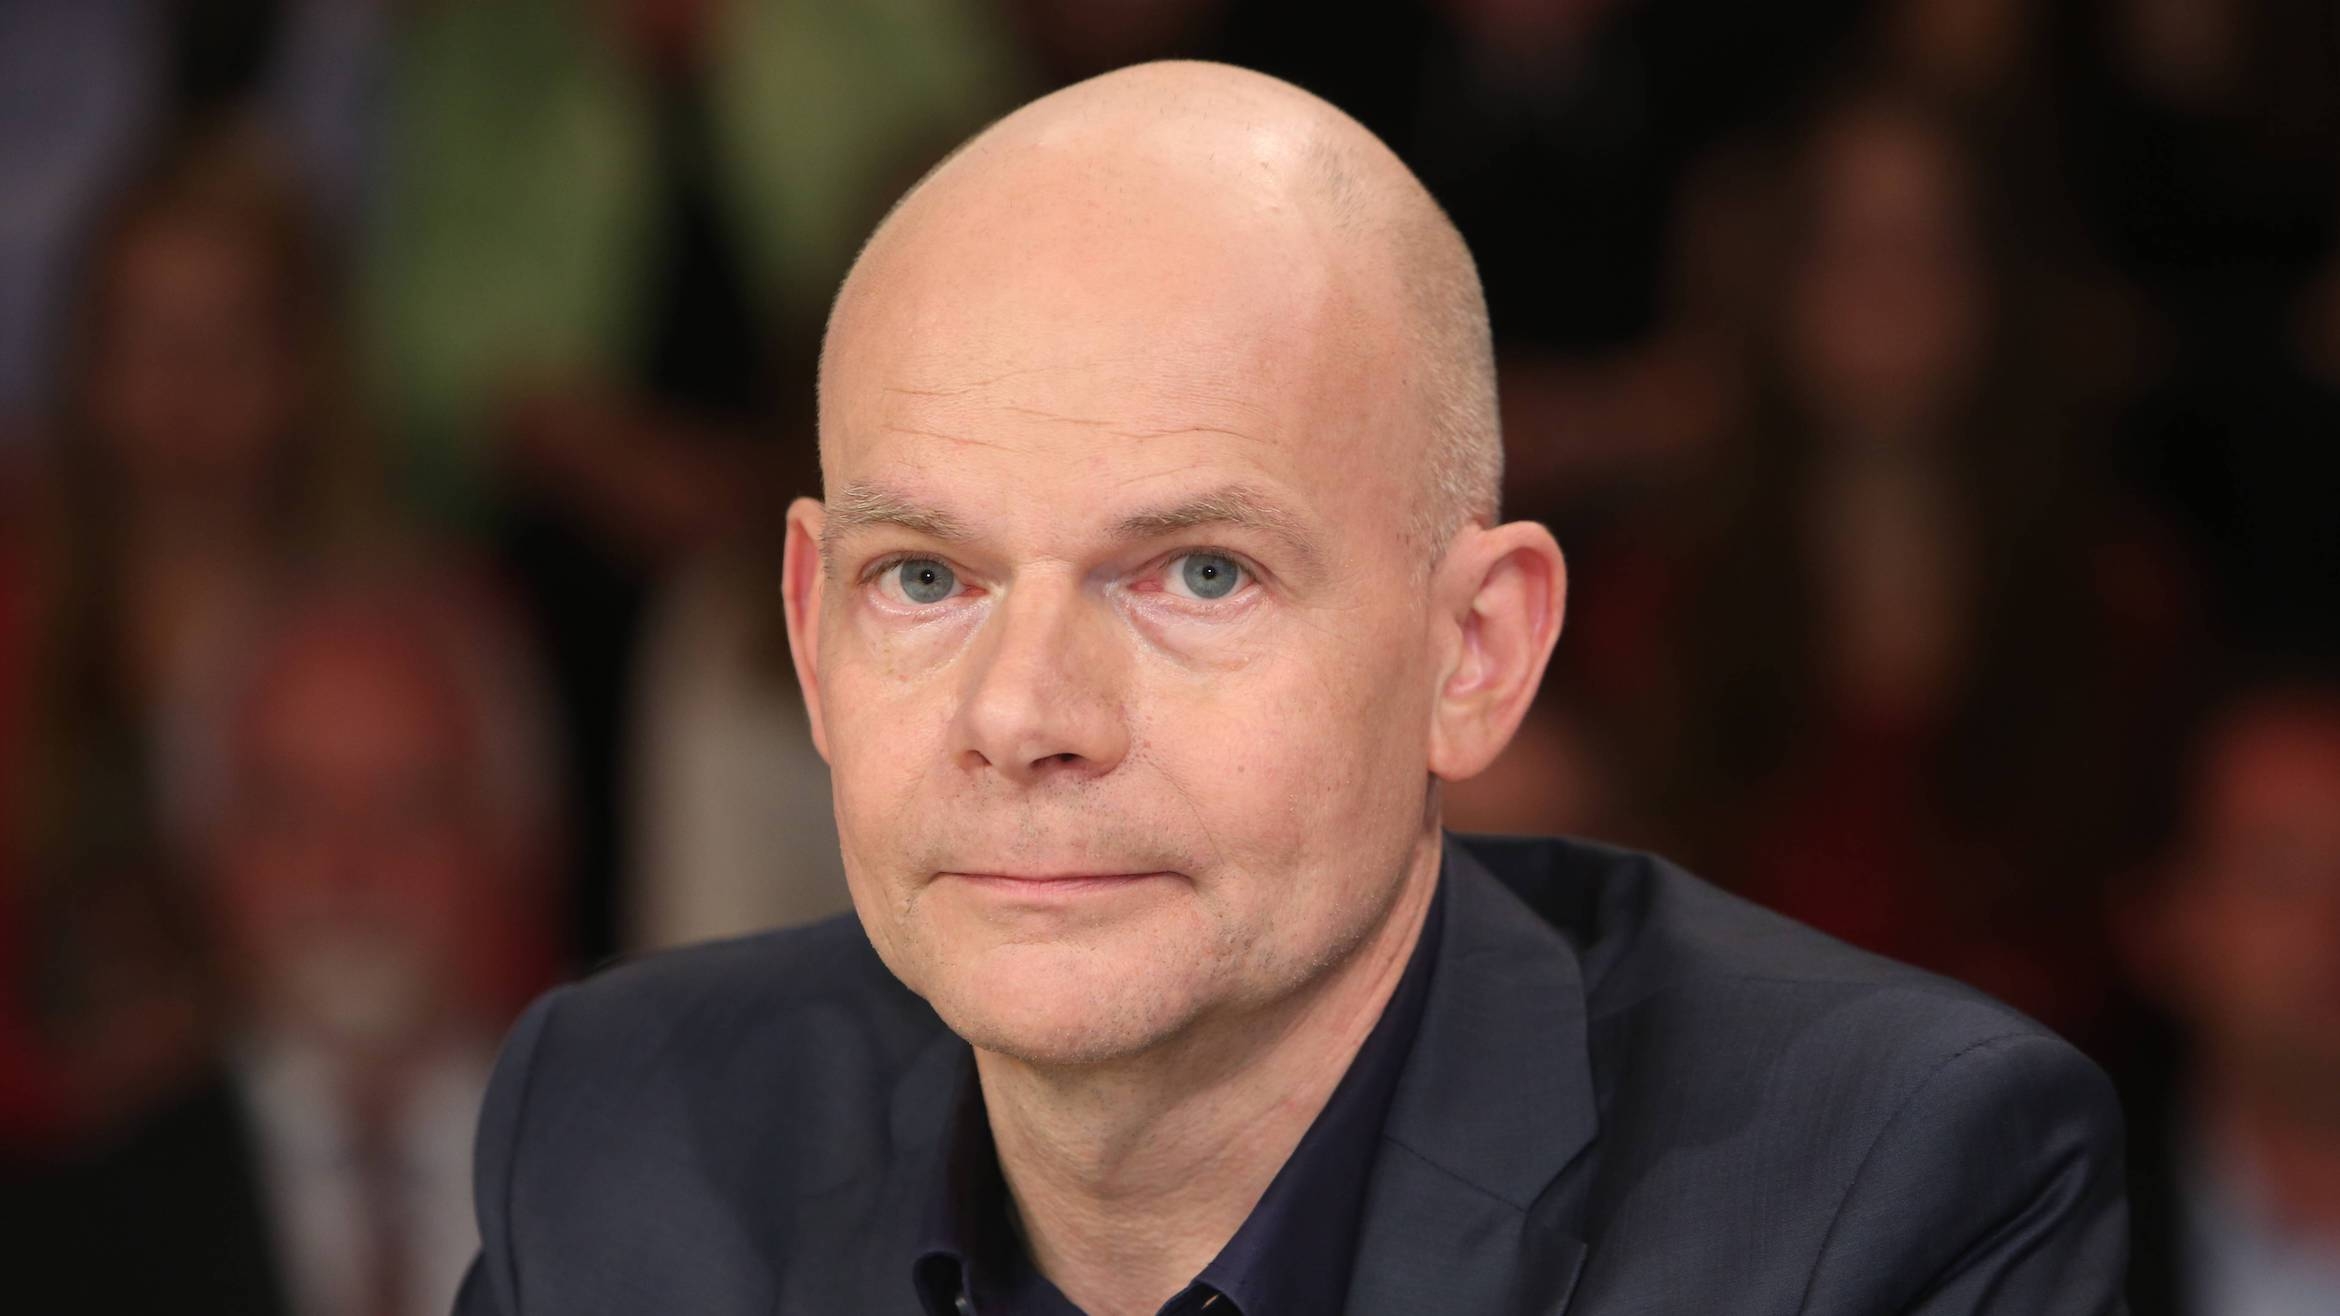 Hans-Martin Tillack in der ZDF-Talkshow "Maybrit Illner" –